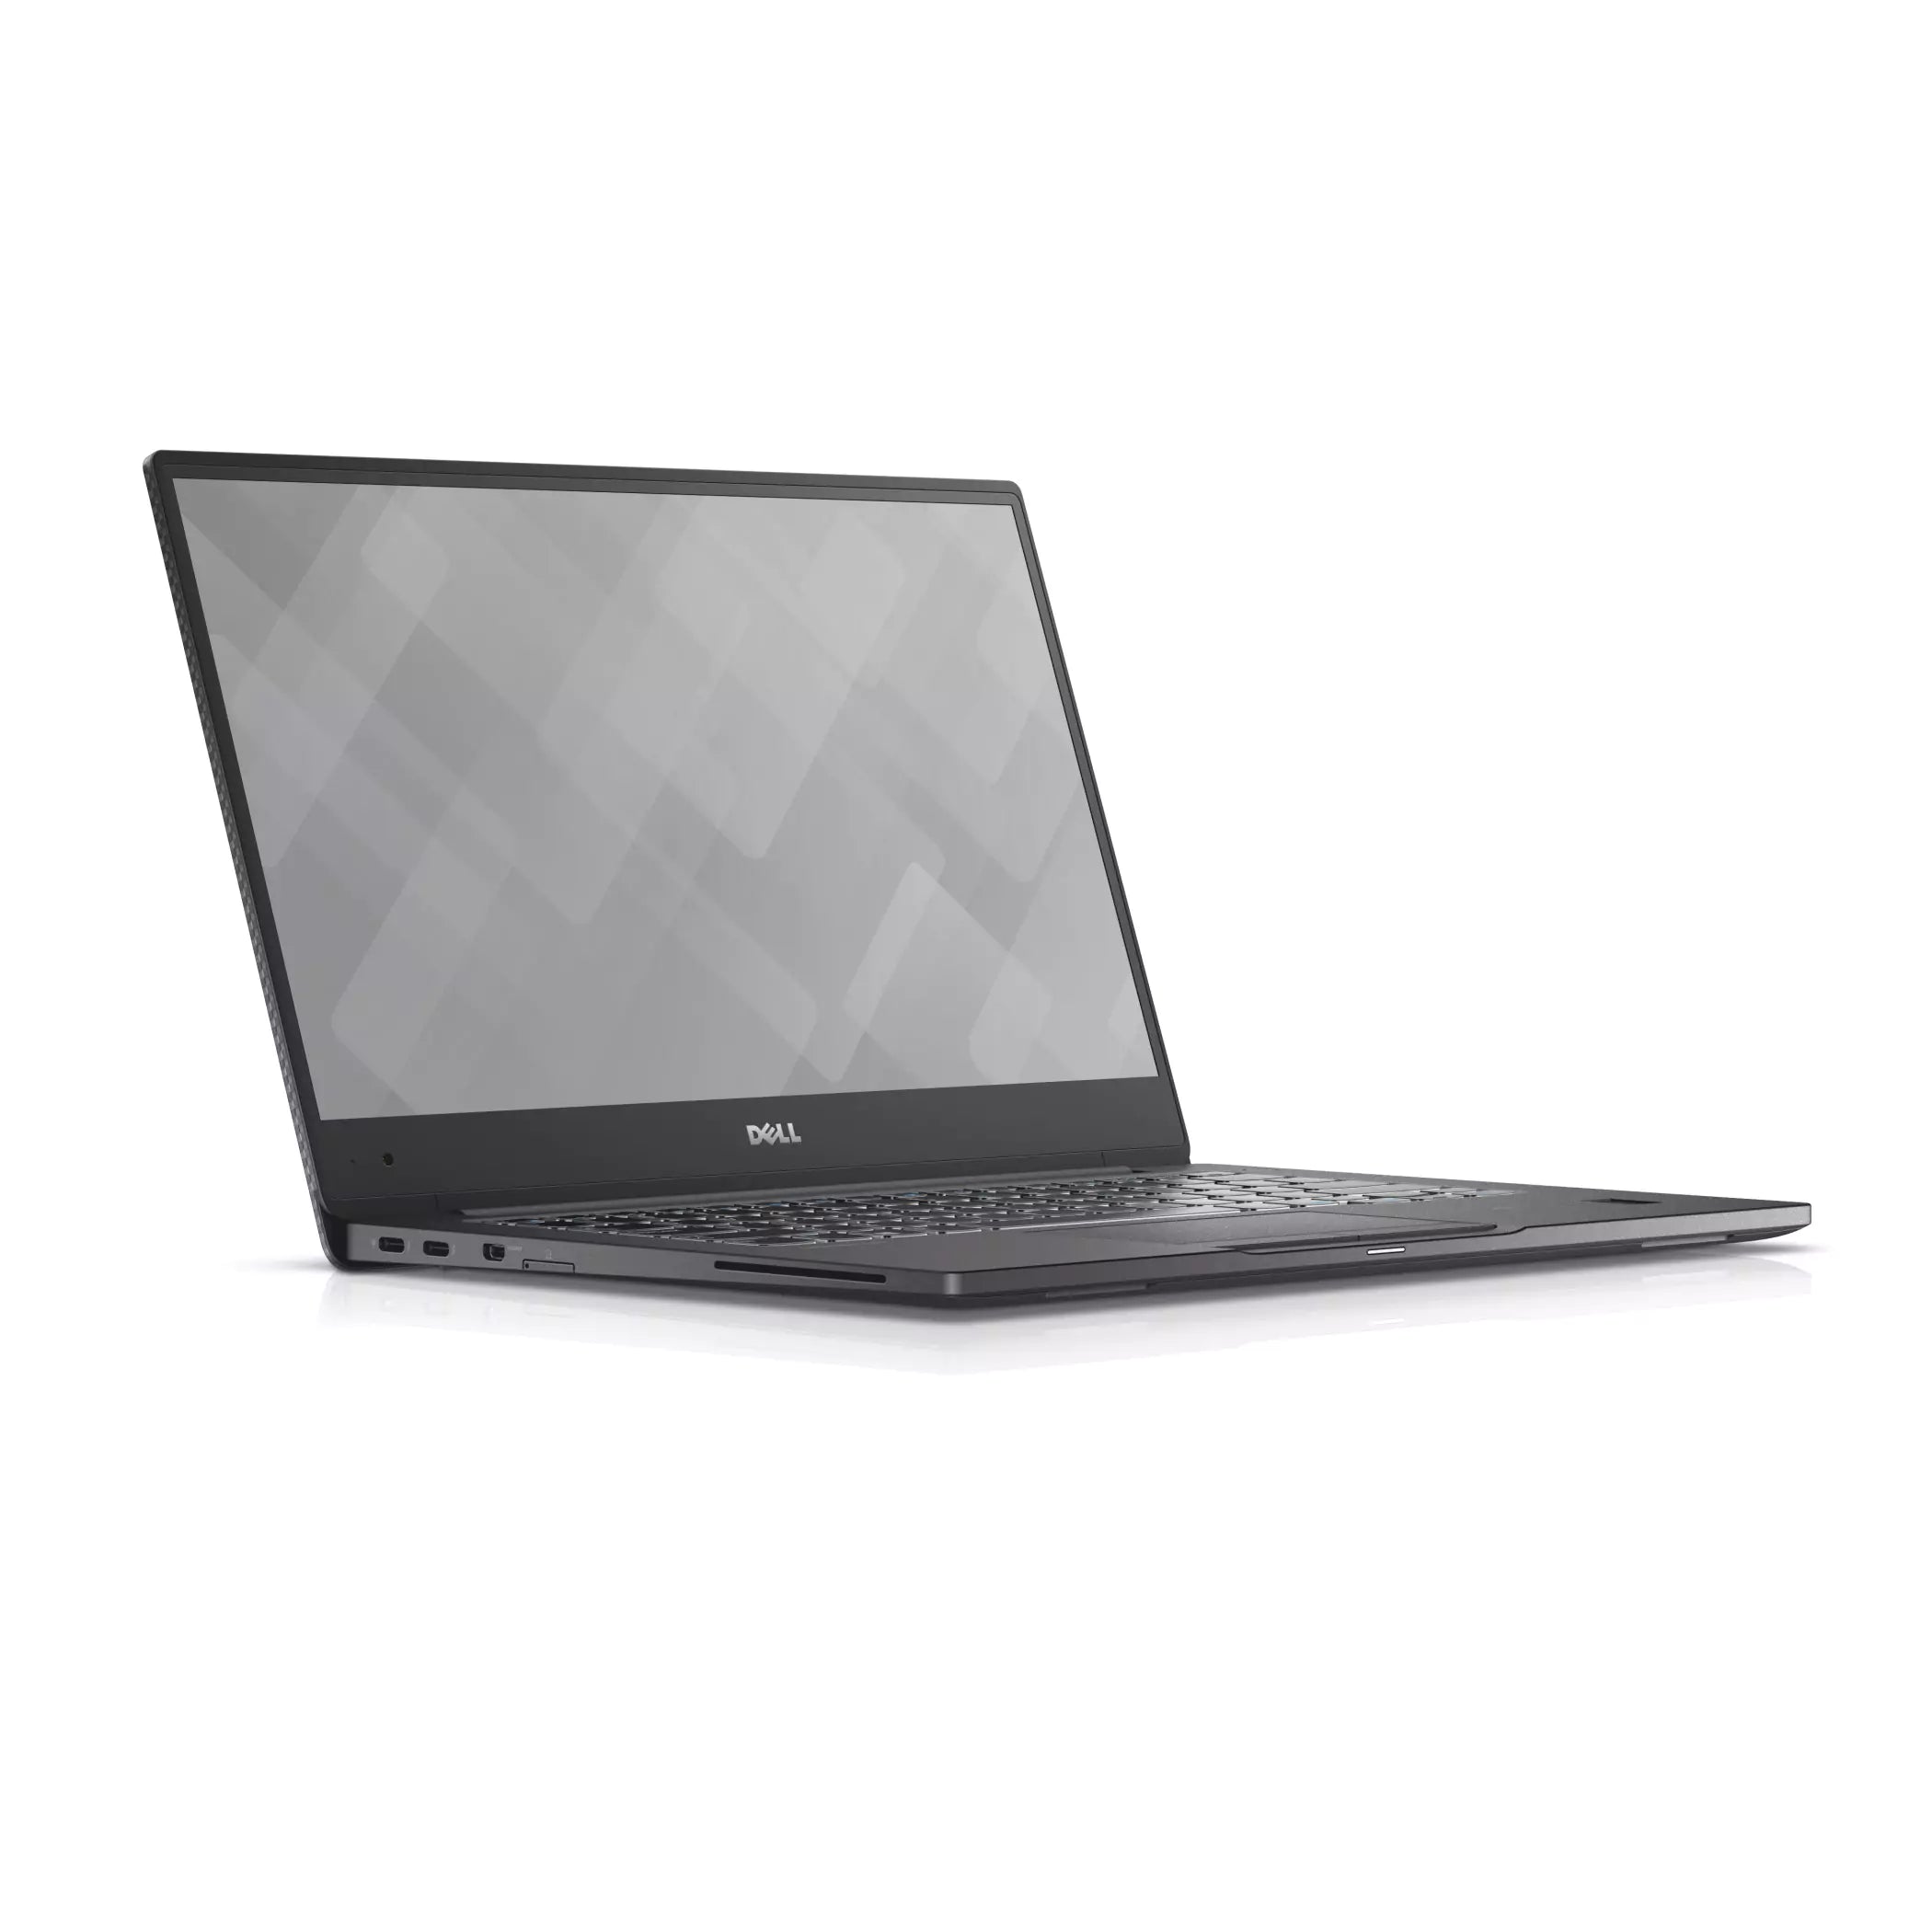 Dell Latitude 7370 Notebook 13.3″ FullHD | Intel Core M5-6Y57 1.1Ghz | Ram 8Gb | SSD 256Gb | ESP Keyboard | Windows10 Pro